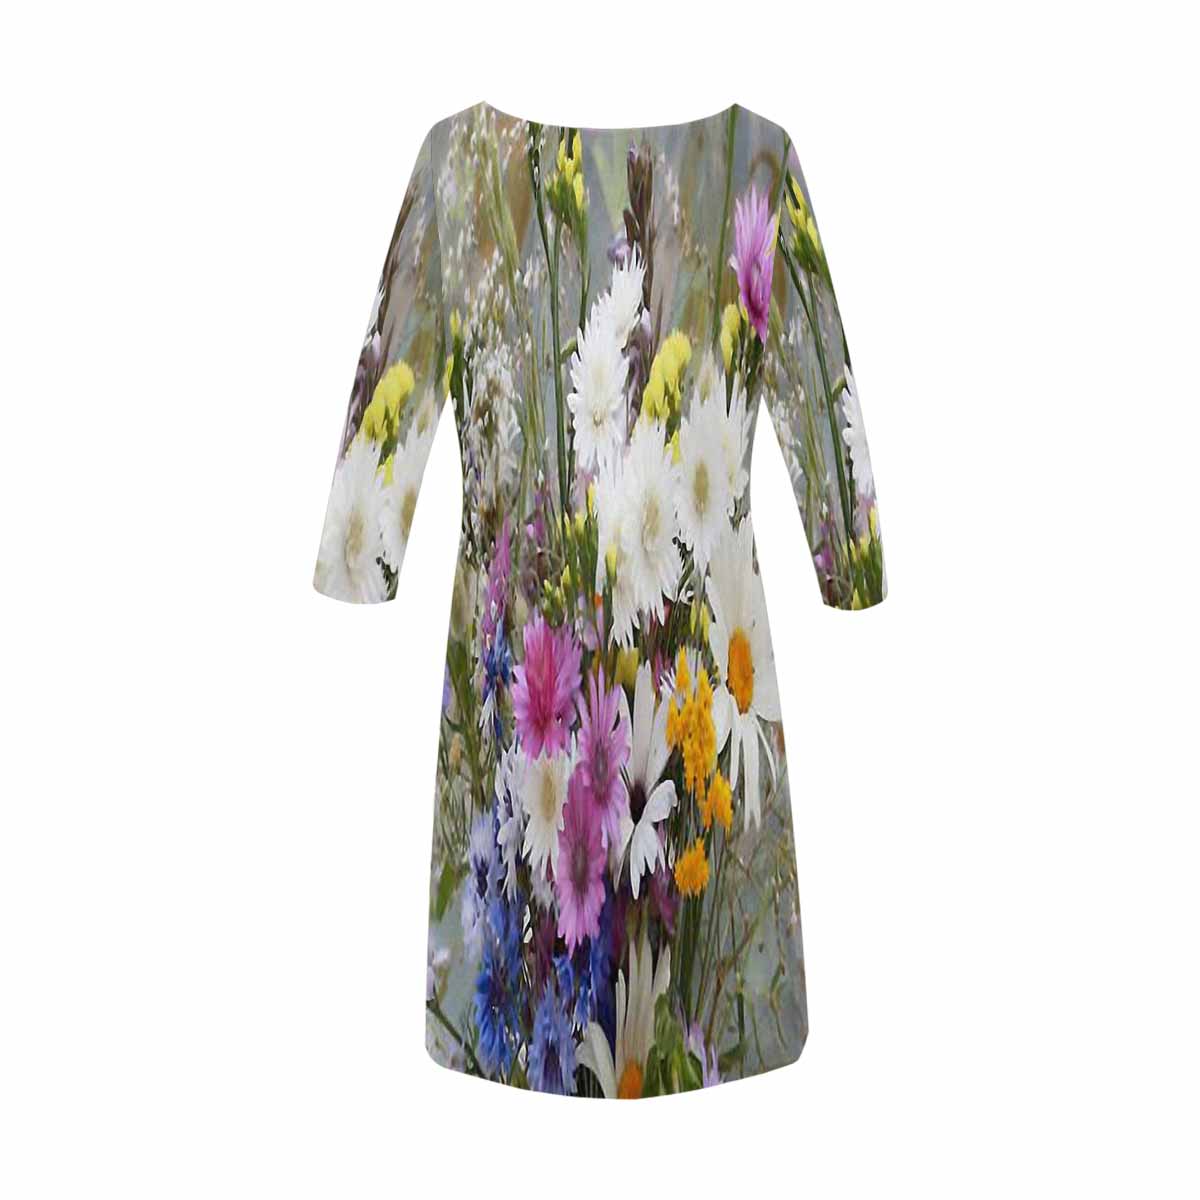 Vintage floral loose dress, XS to 3X plus size, model D29532 Design 02